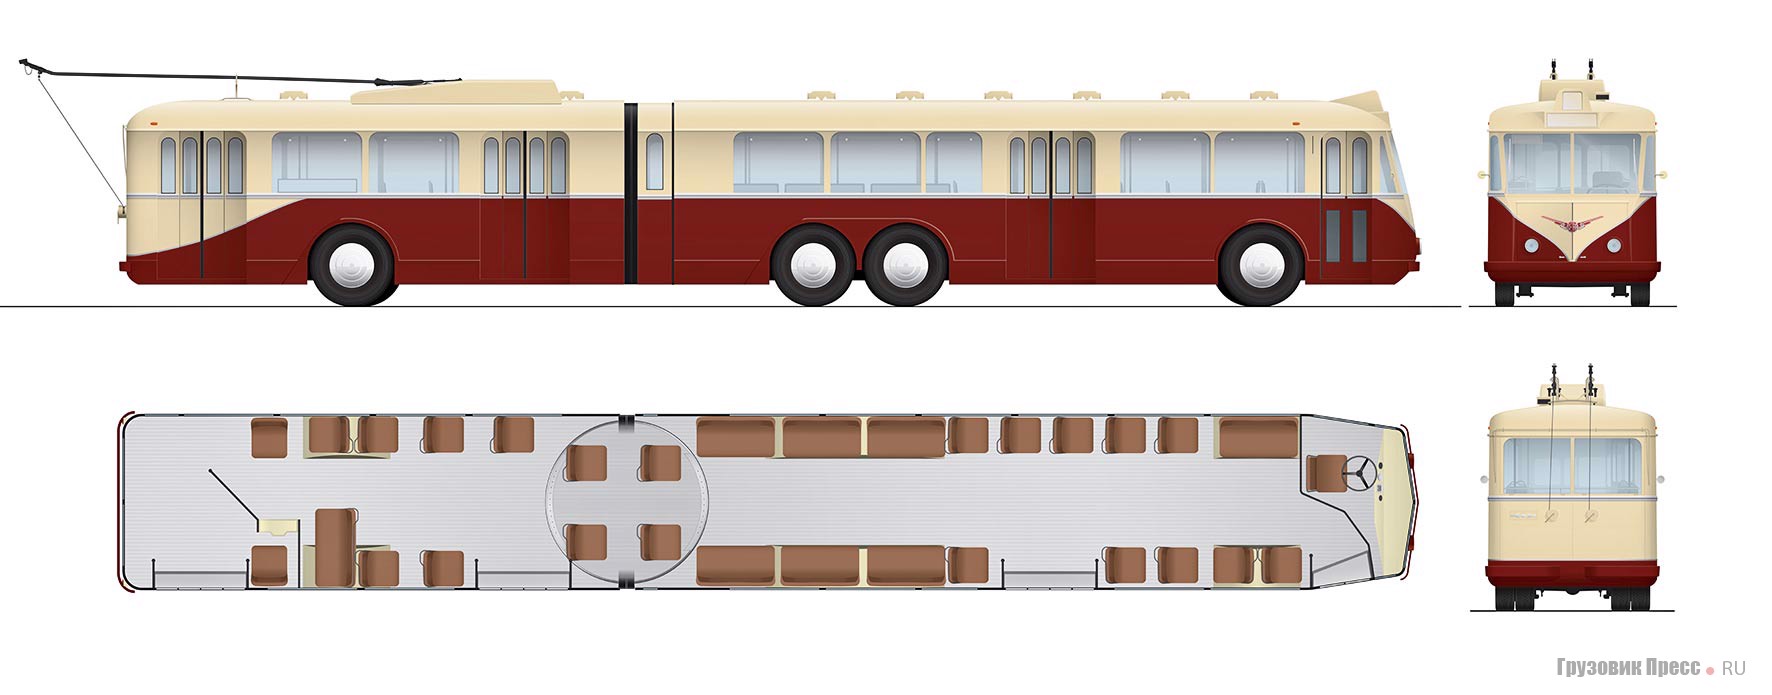   Схема троллейбуса Vetra VA4 SR. Иллюстрации – Борис Петухов 